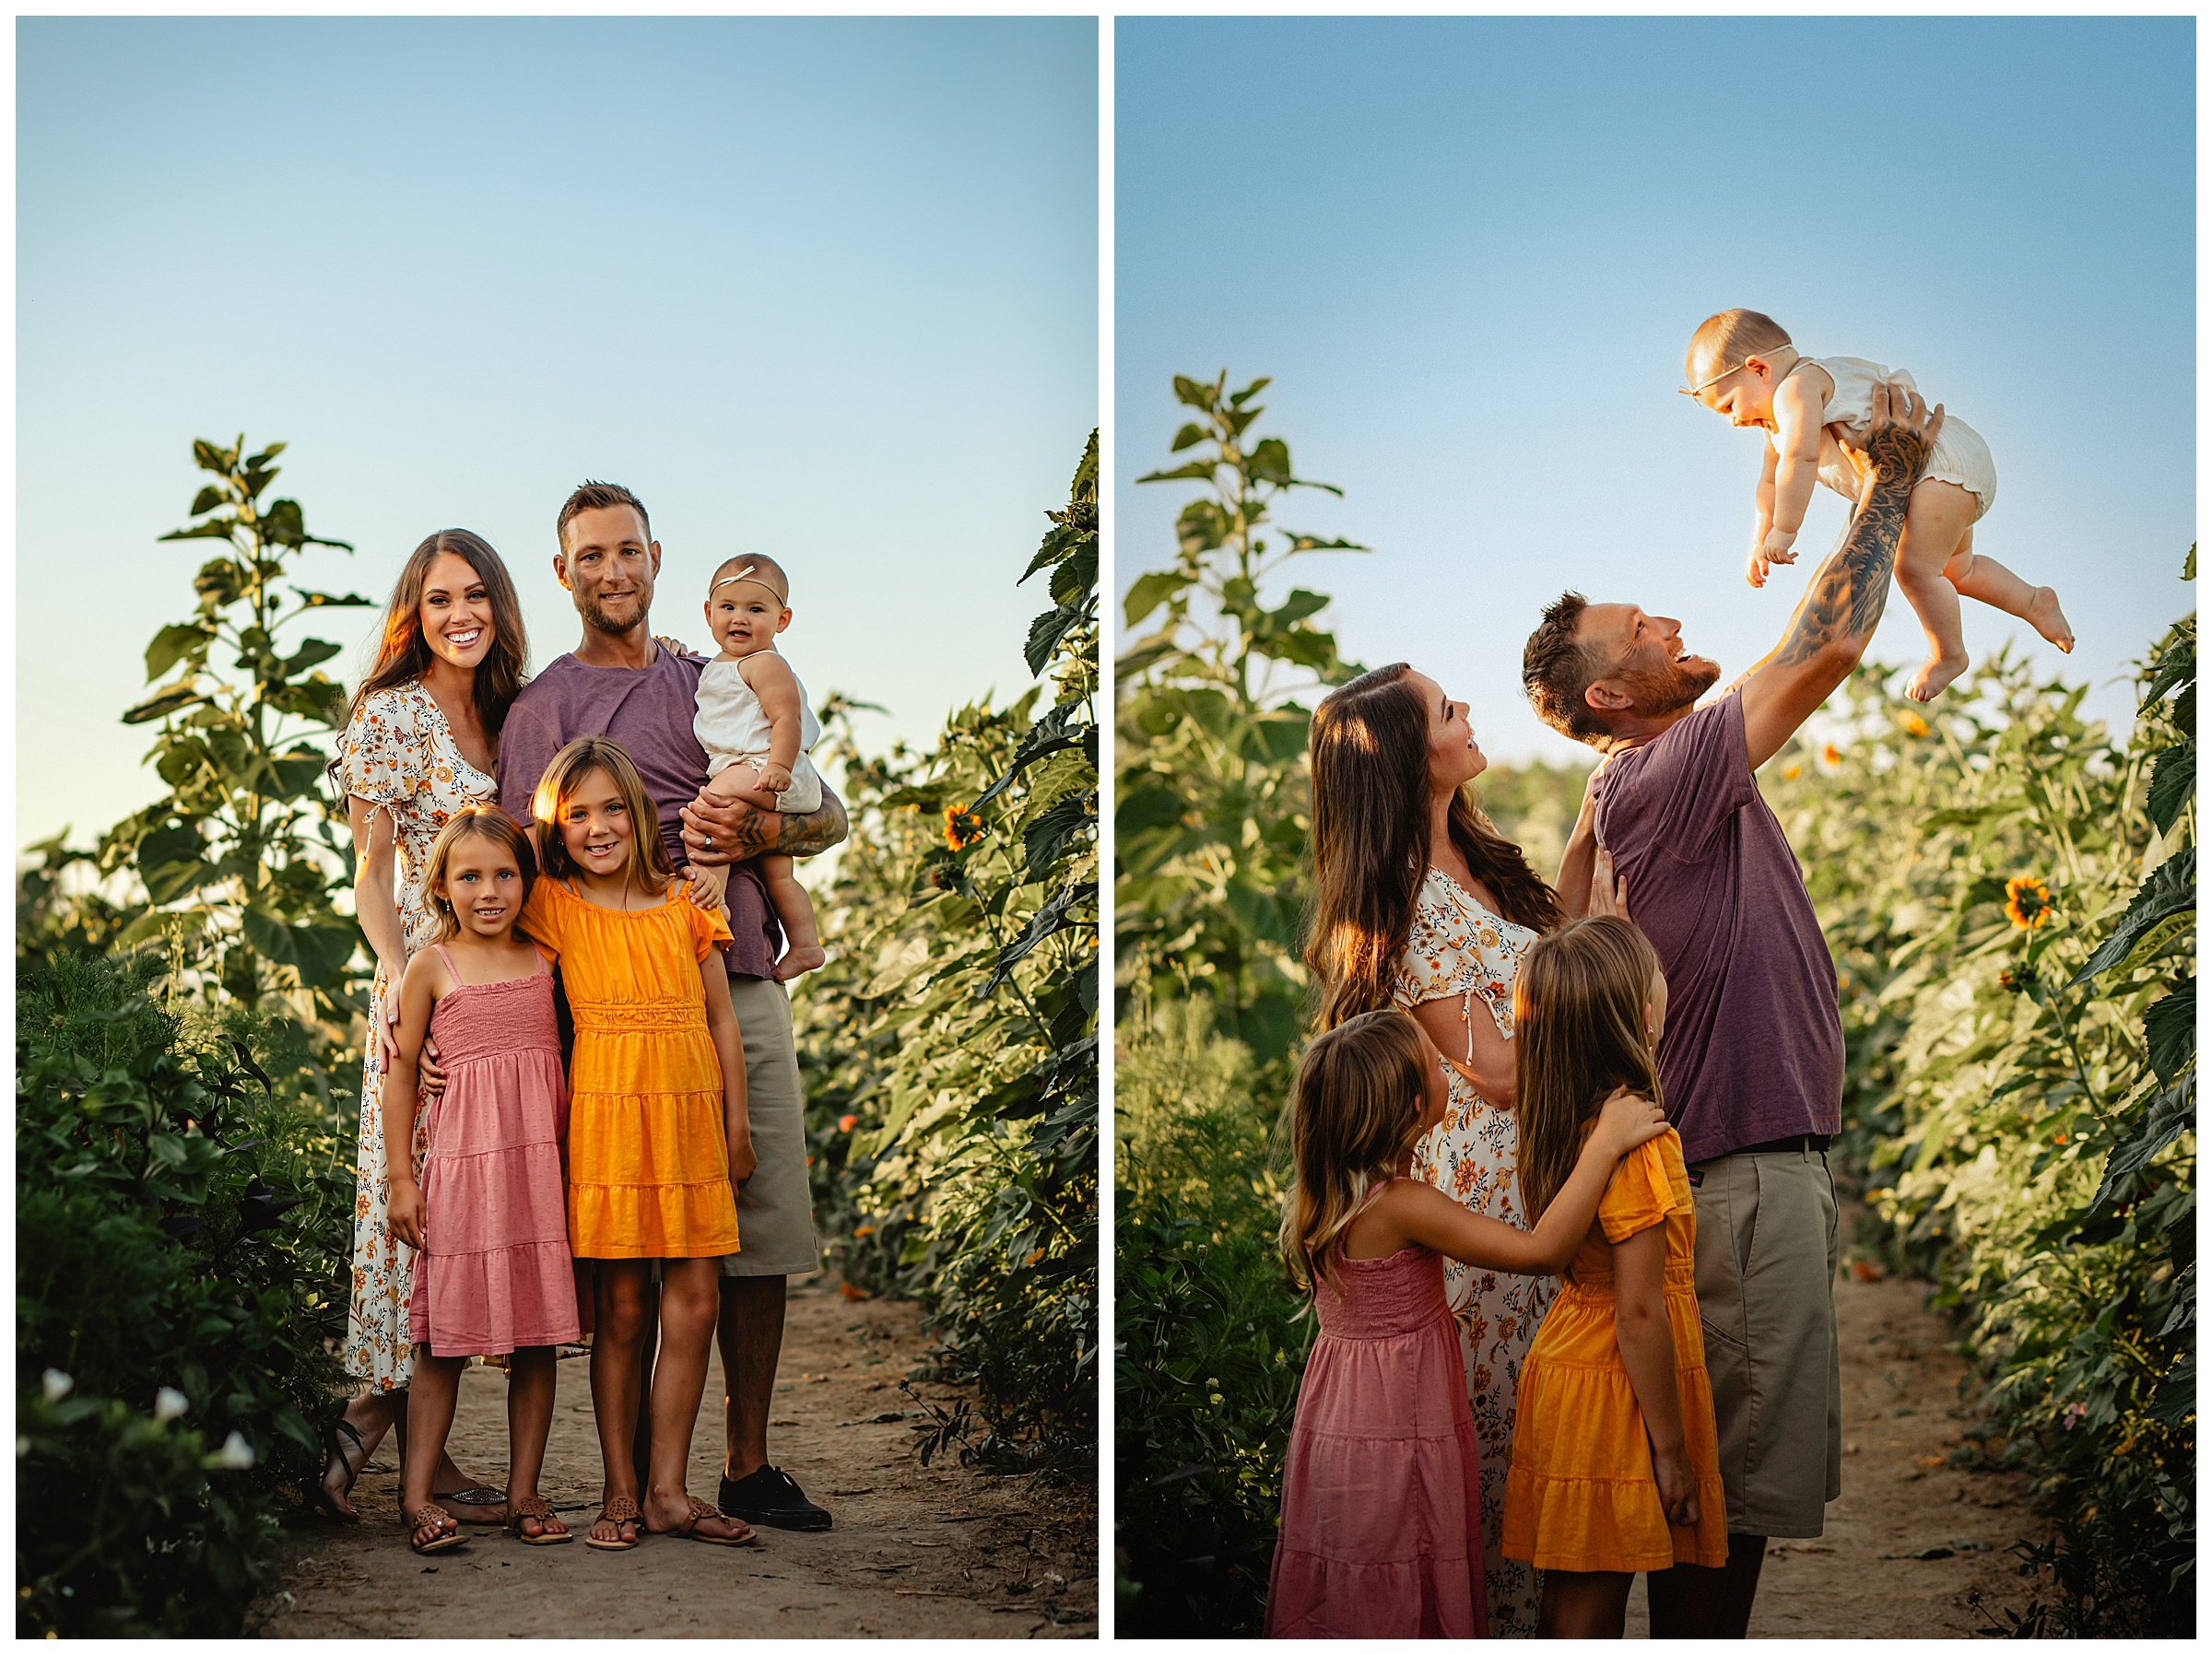 Childers-4_Boise Family Photography.jpg